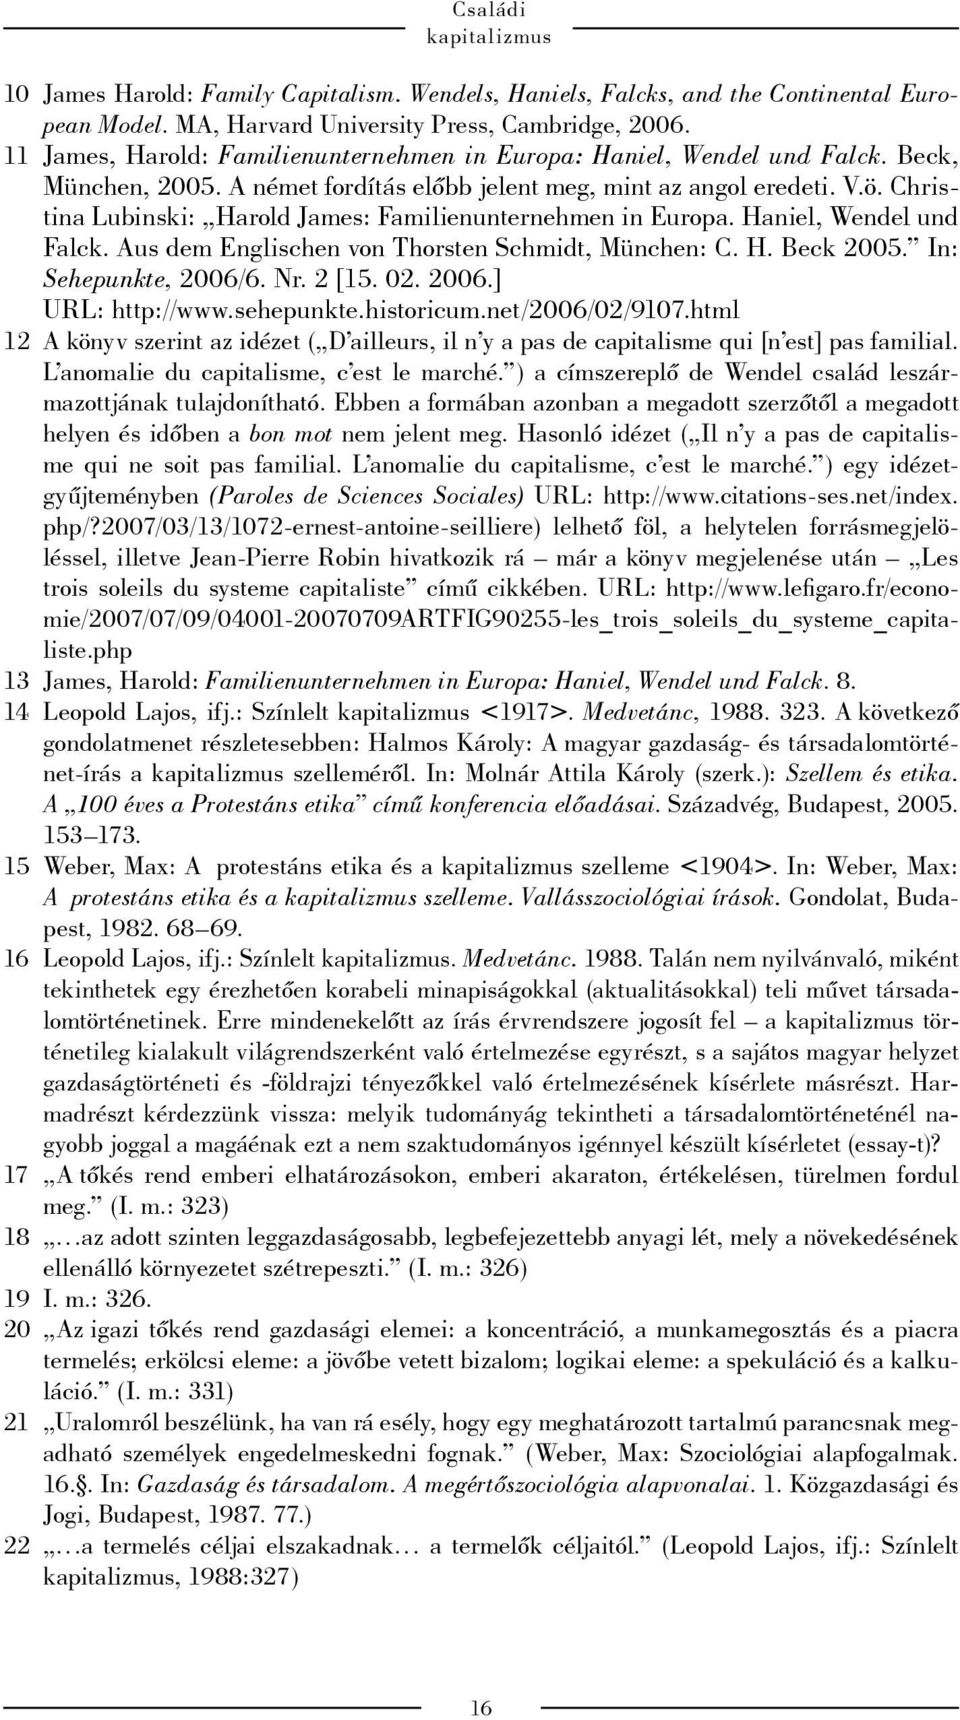 Christina Lubinski: Harold James: Familienunternehmen in Europa. Haniel, Wendel und Falck. Aus dem Englischen von Thorsten Schmidt, München: C. H. Beck 2005. In: Sehepunkte, 2006/6. Nr. 2 [15. 02.